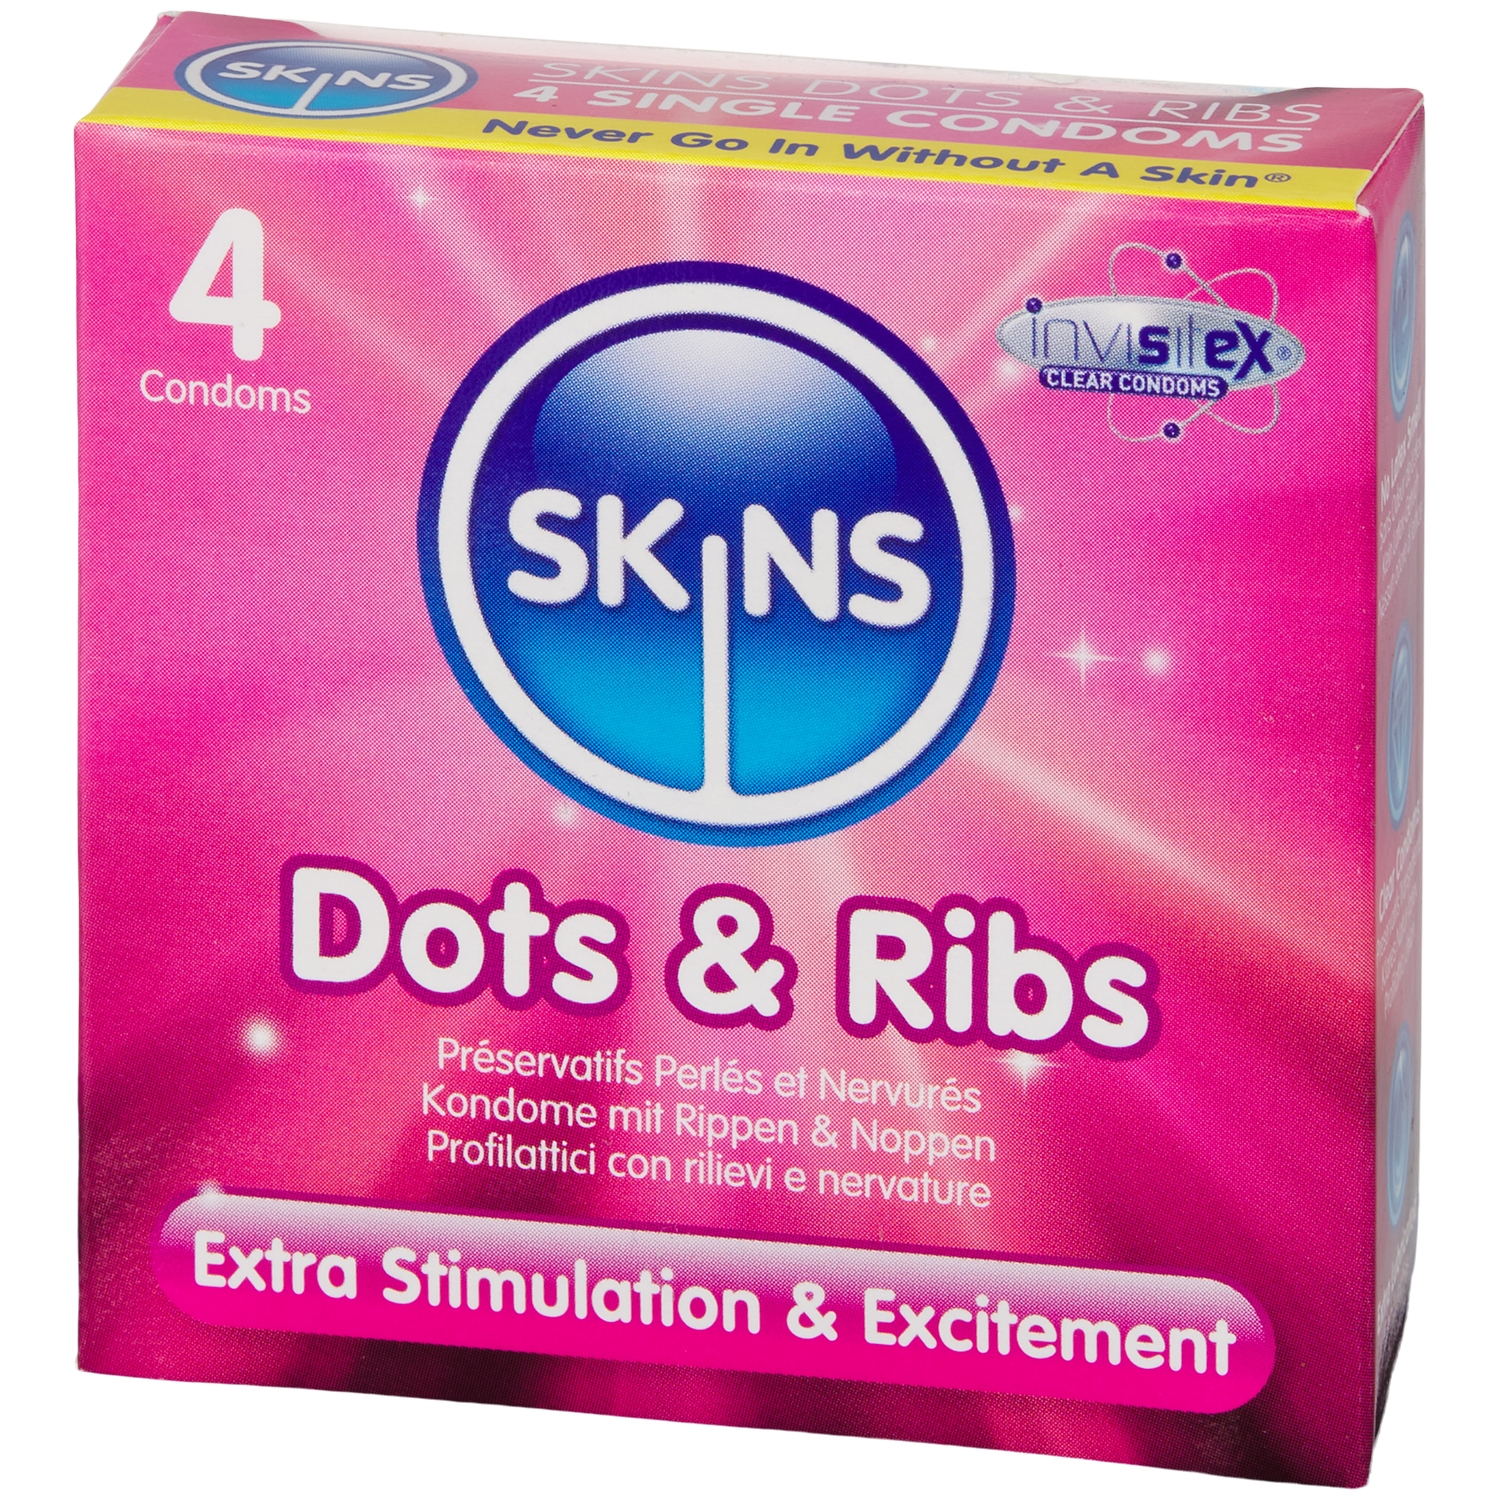 Skins Dots & Ribs Kondomer 4 St - Klar | Tillbehör//Kondomer//Män//REA för Män//REA//Bättre Sex//Specialkondomer//Par kondomer//Små Kondomer//Tunna Kondomer//Skins | Intimast